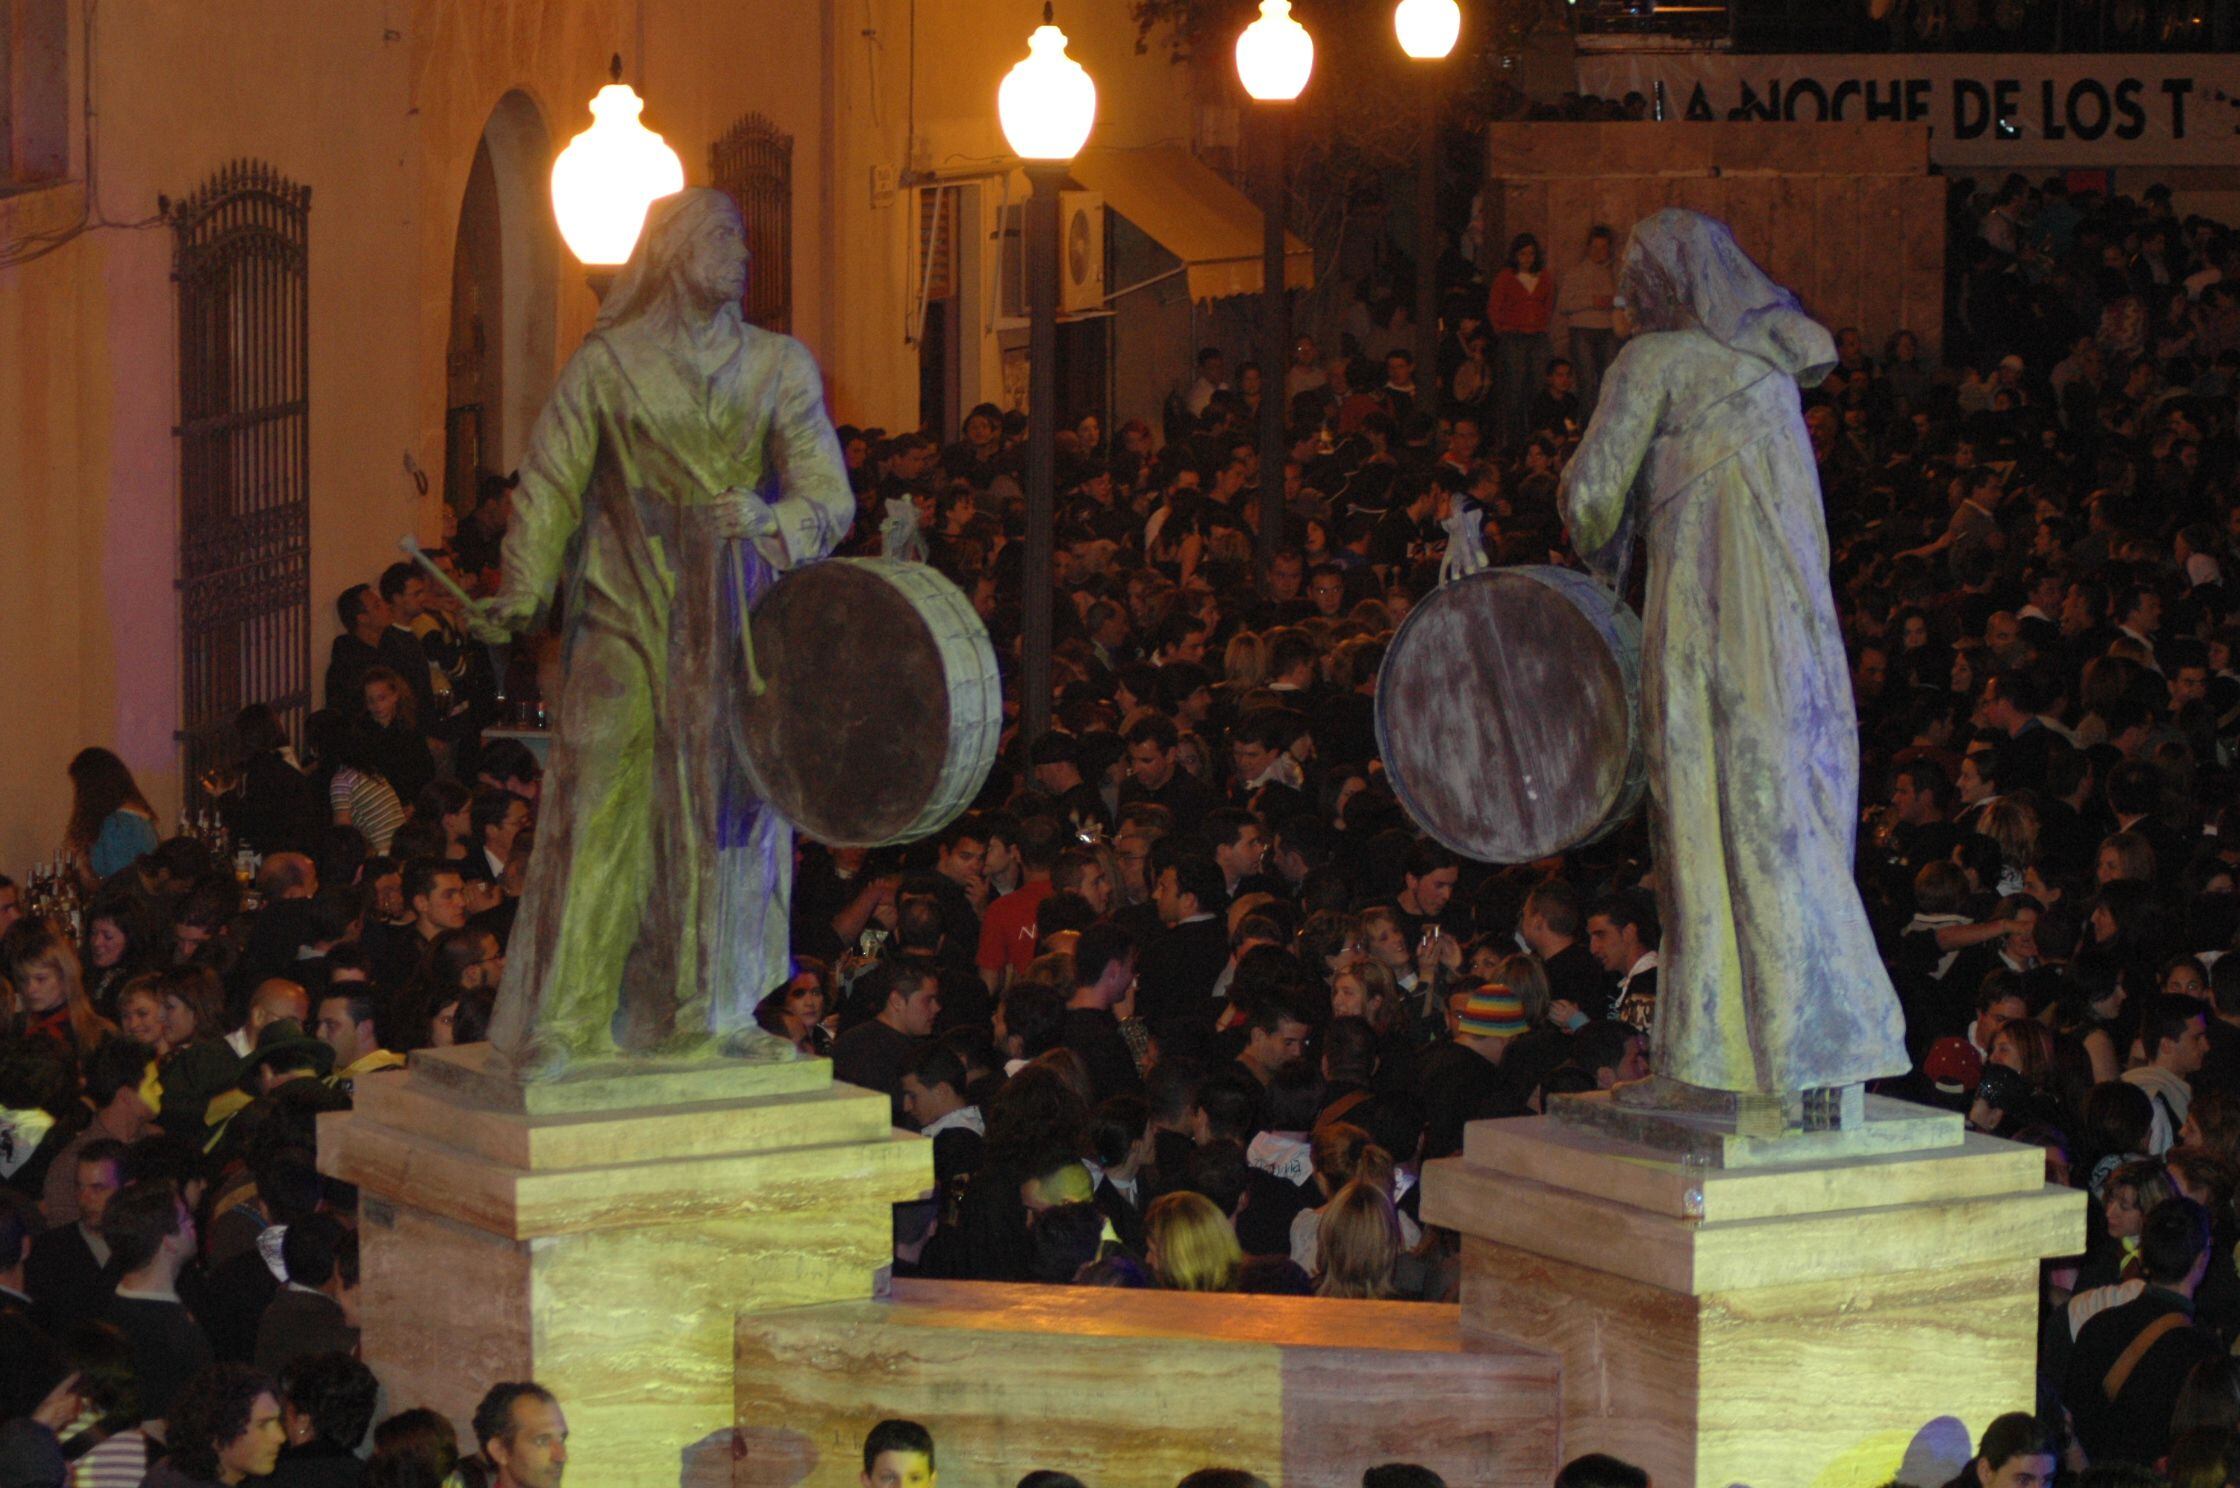 La Noche de los Tambores es la fiesta más singular de Mula. Ha sido declarada Patromonio Cultural Inmaterial de la Humanidad por la Unesco.